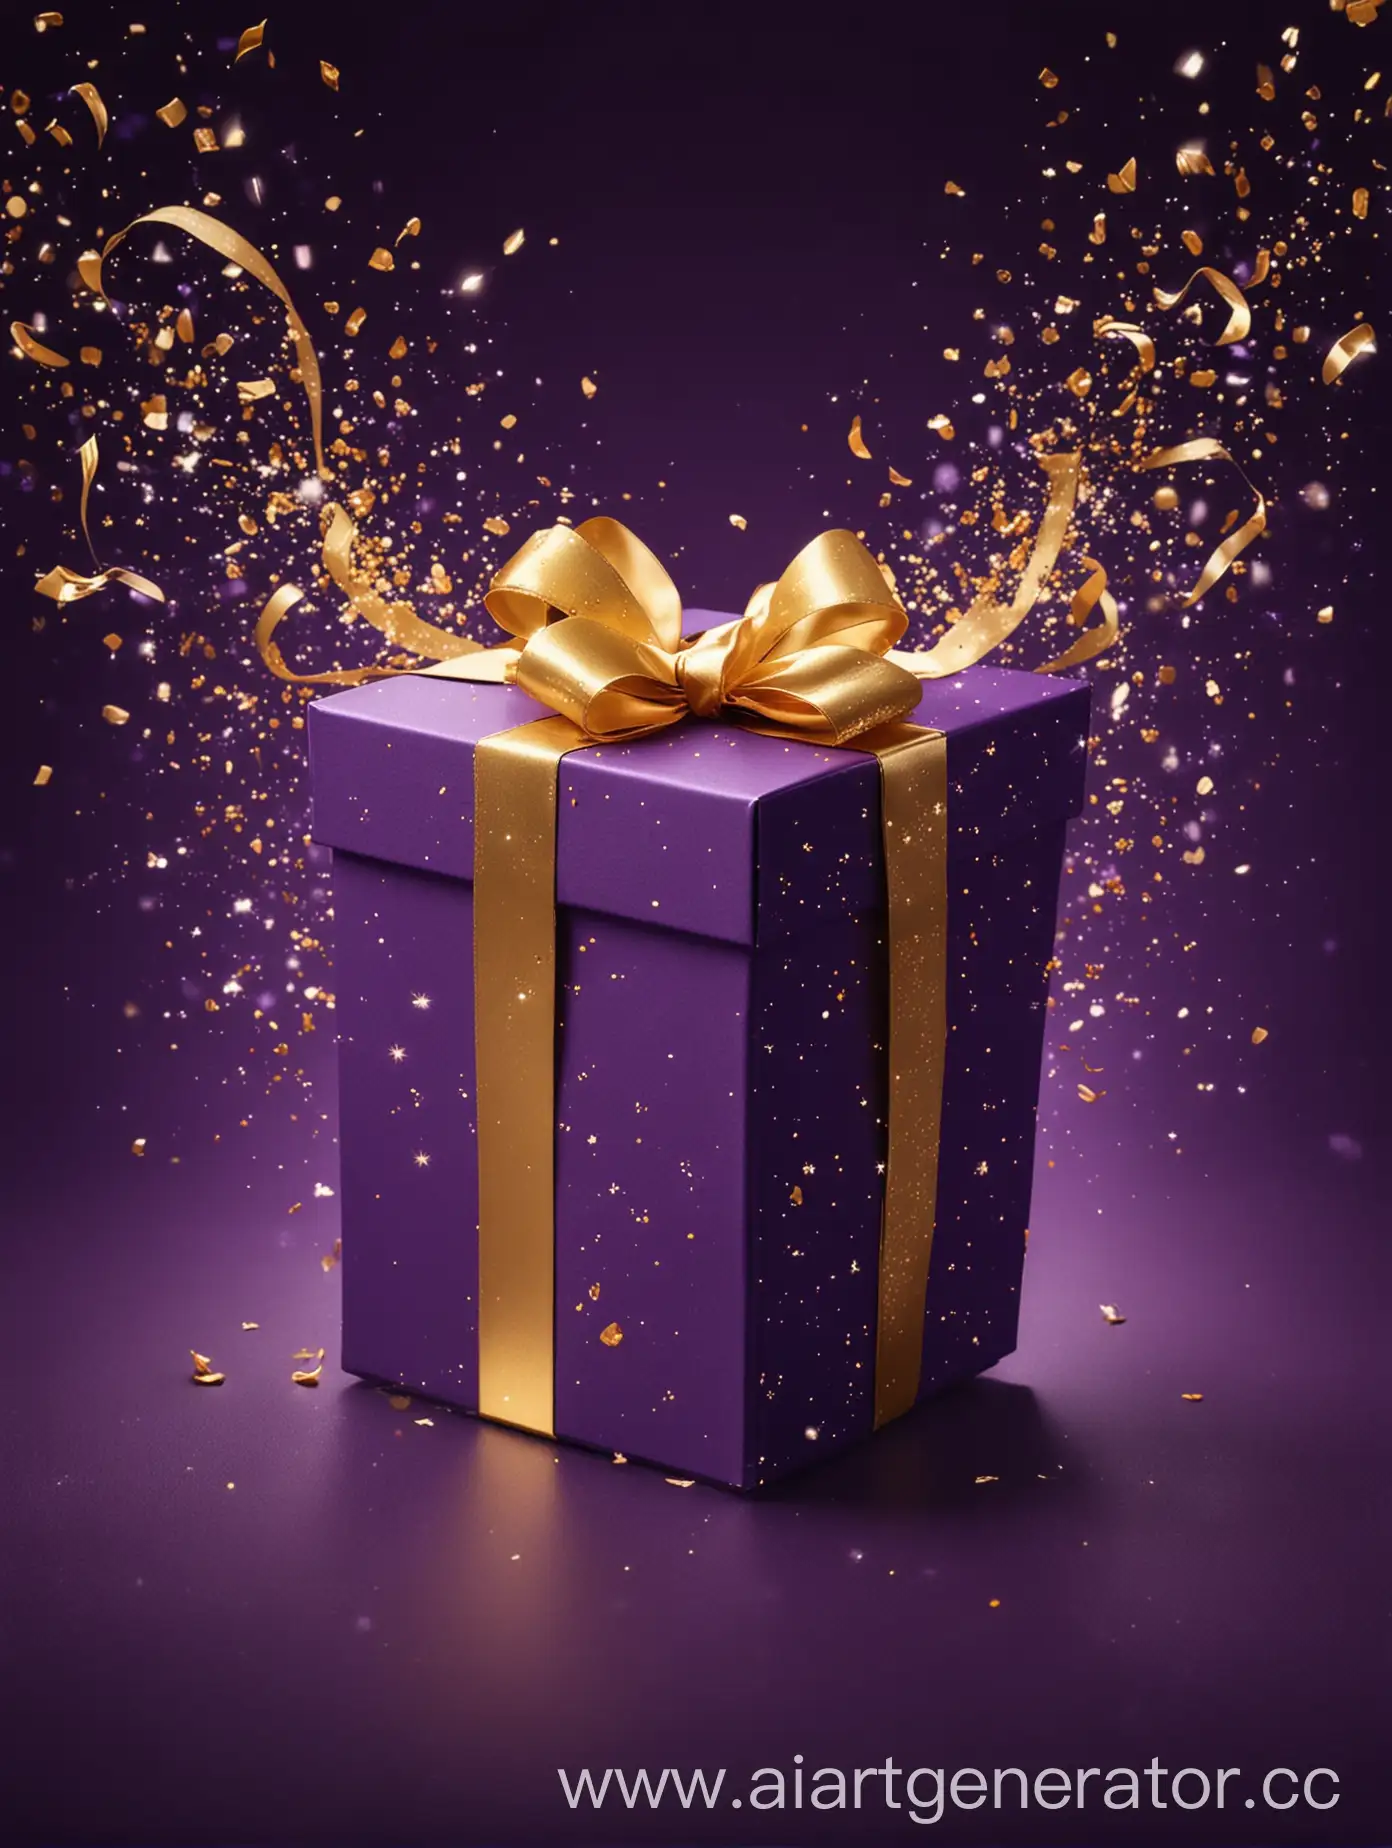 темно фиолетовый фон, фиолетовая подарочная коробка с золотой лентой, коробка открыта, в нее летят золотые блестки